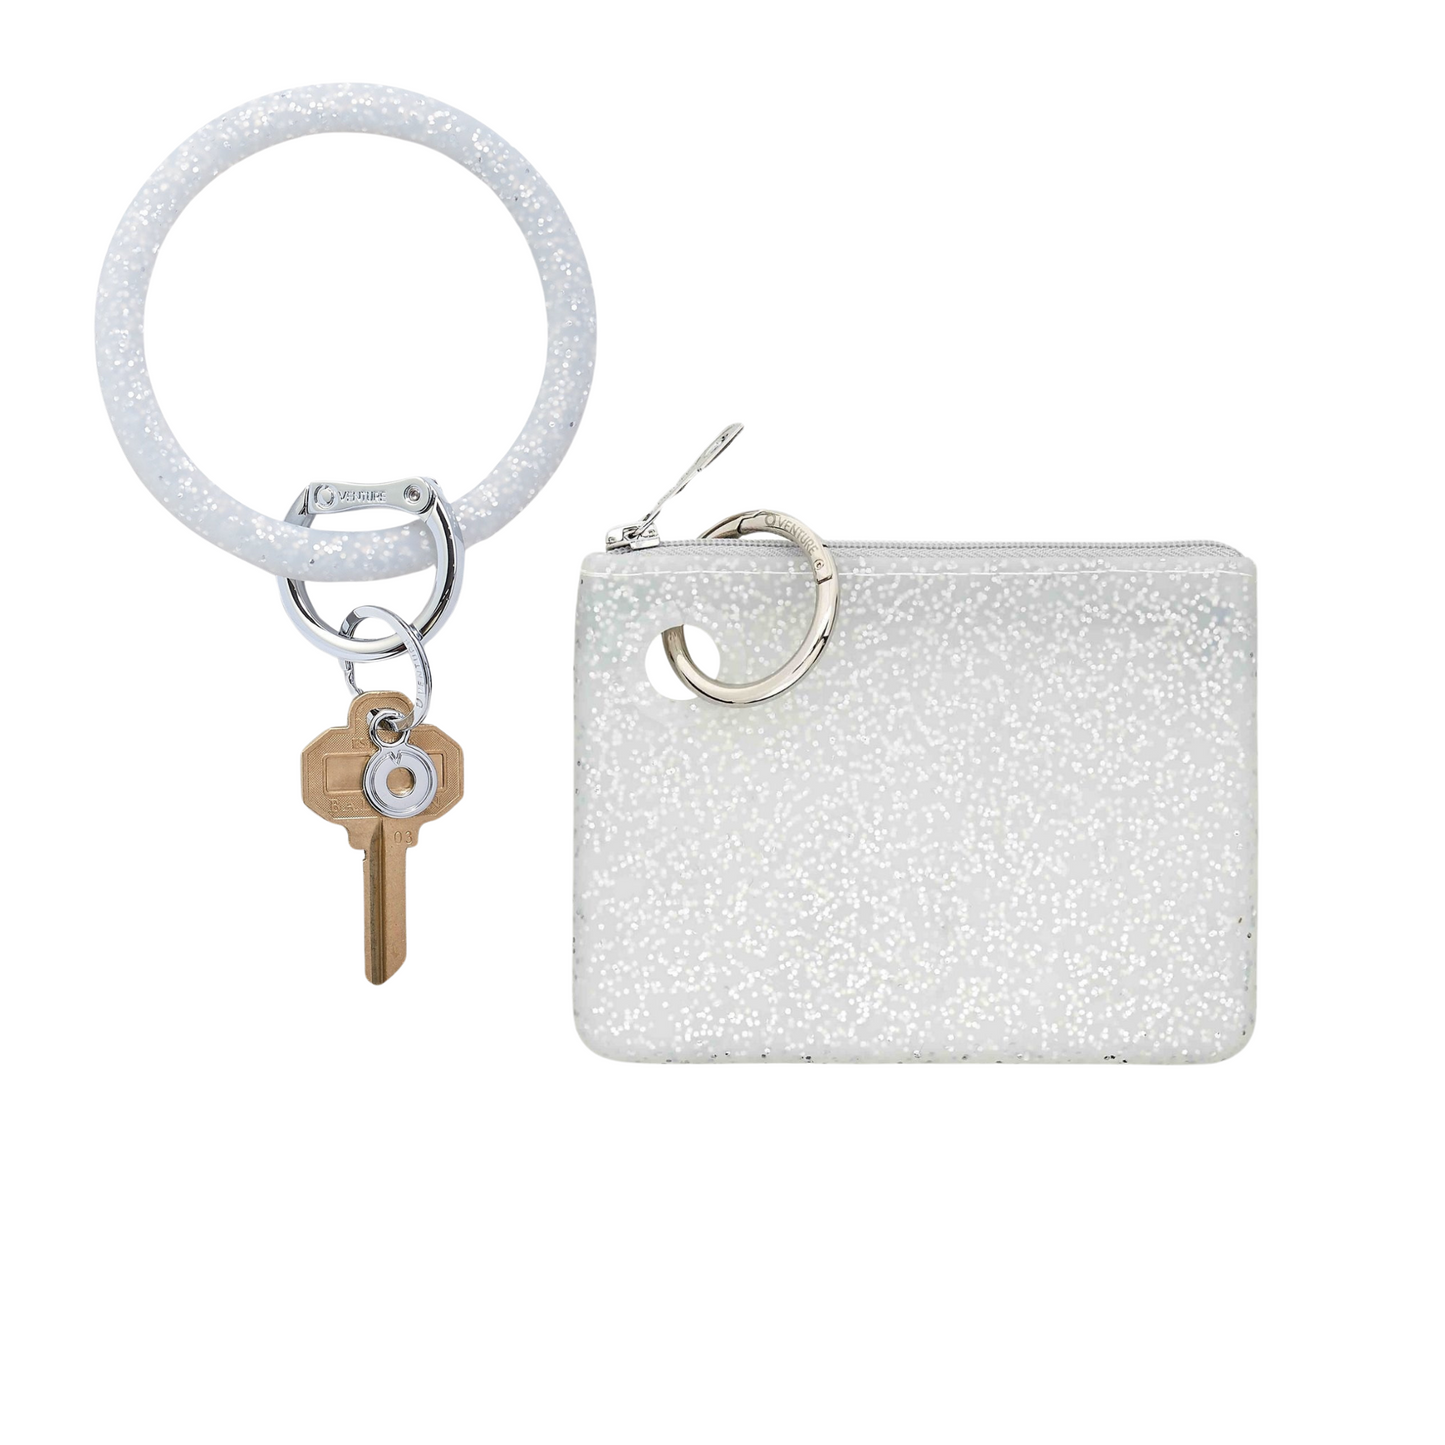 Mini pouch wristlet in smooth silicone material in silver confetti.